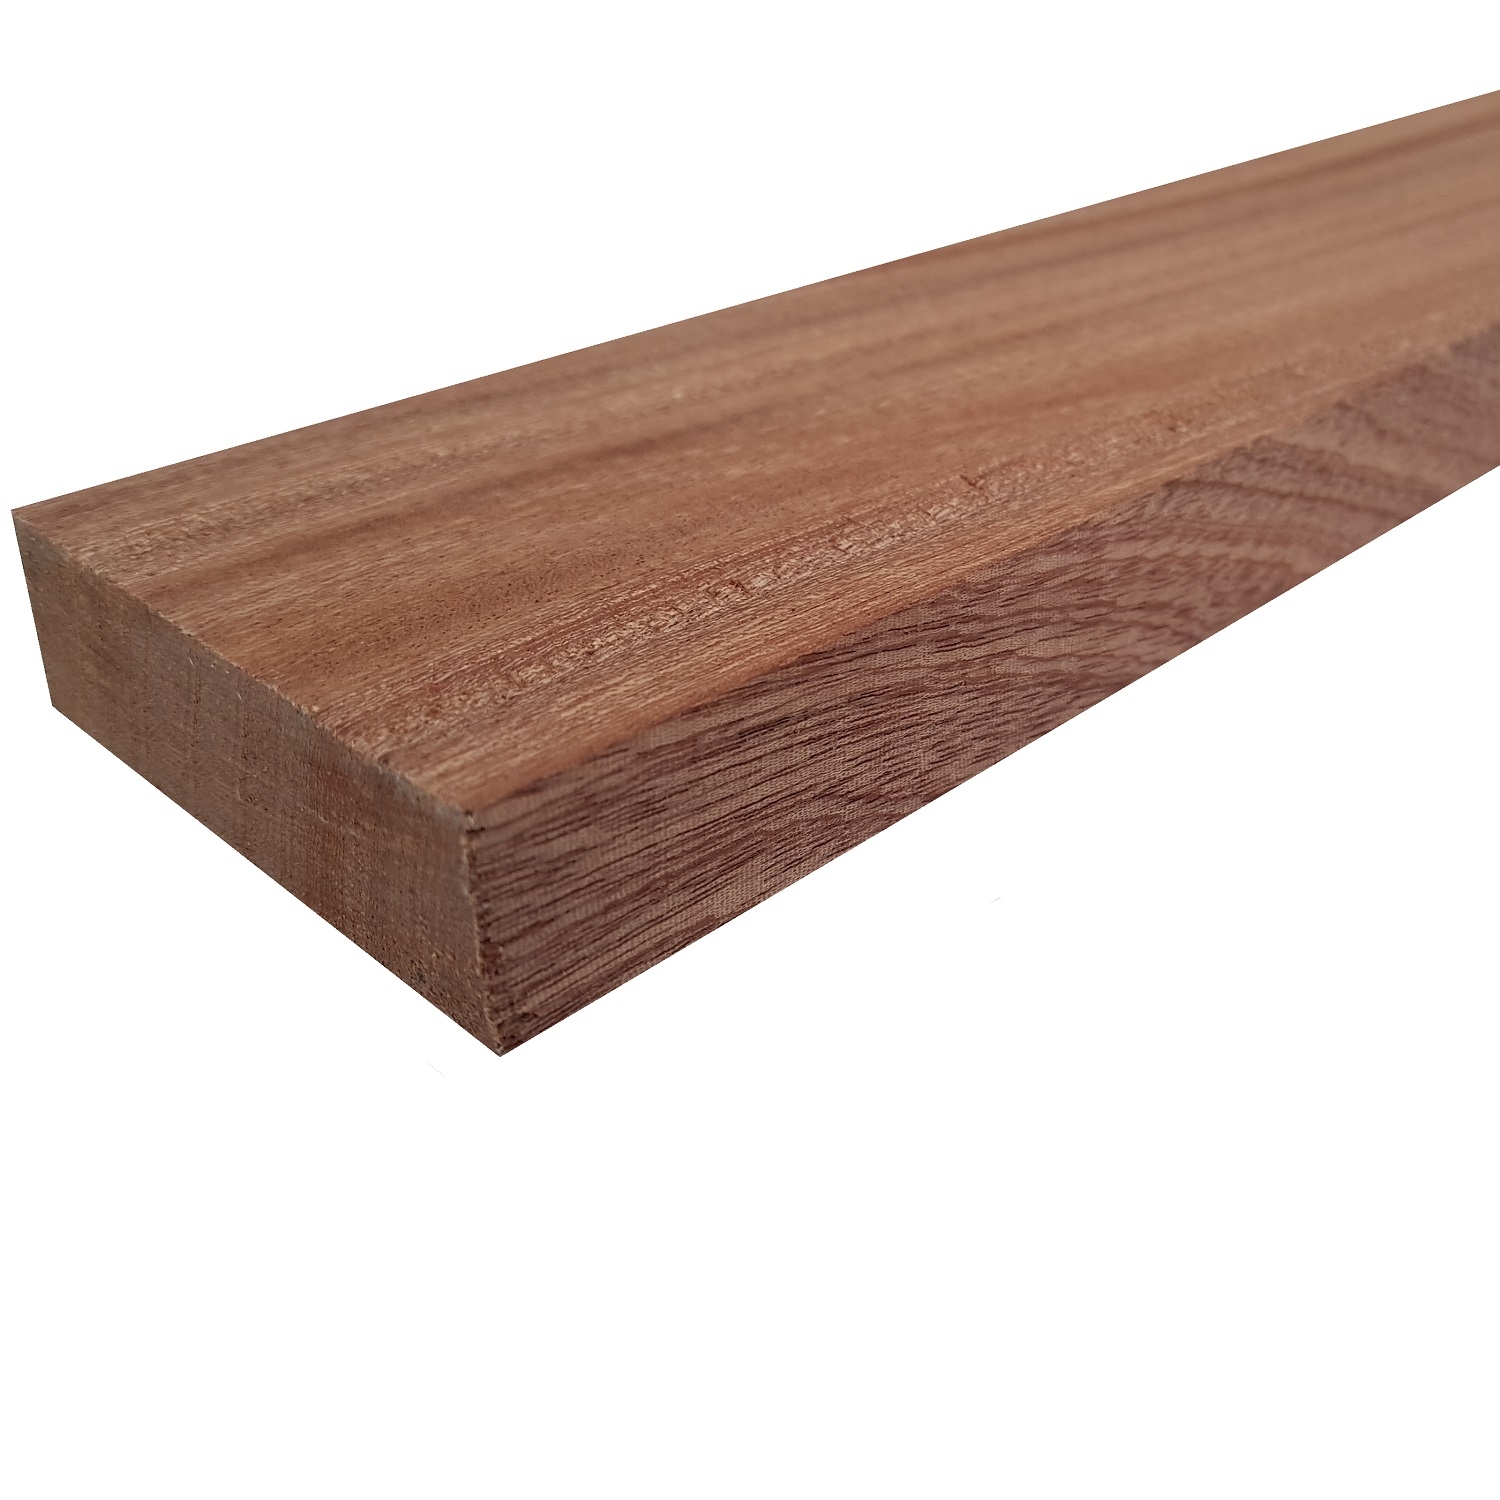 Tavola legno di Mogano Refilato Piallato mm 21 x 110 x 1550